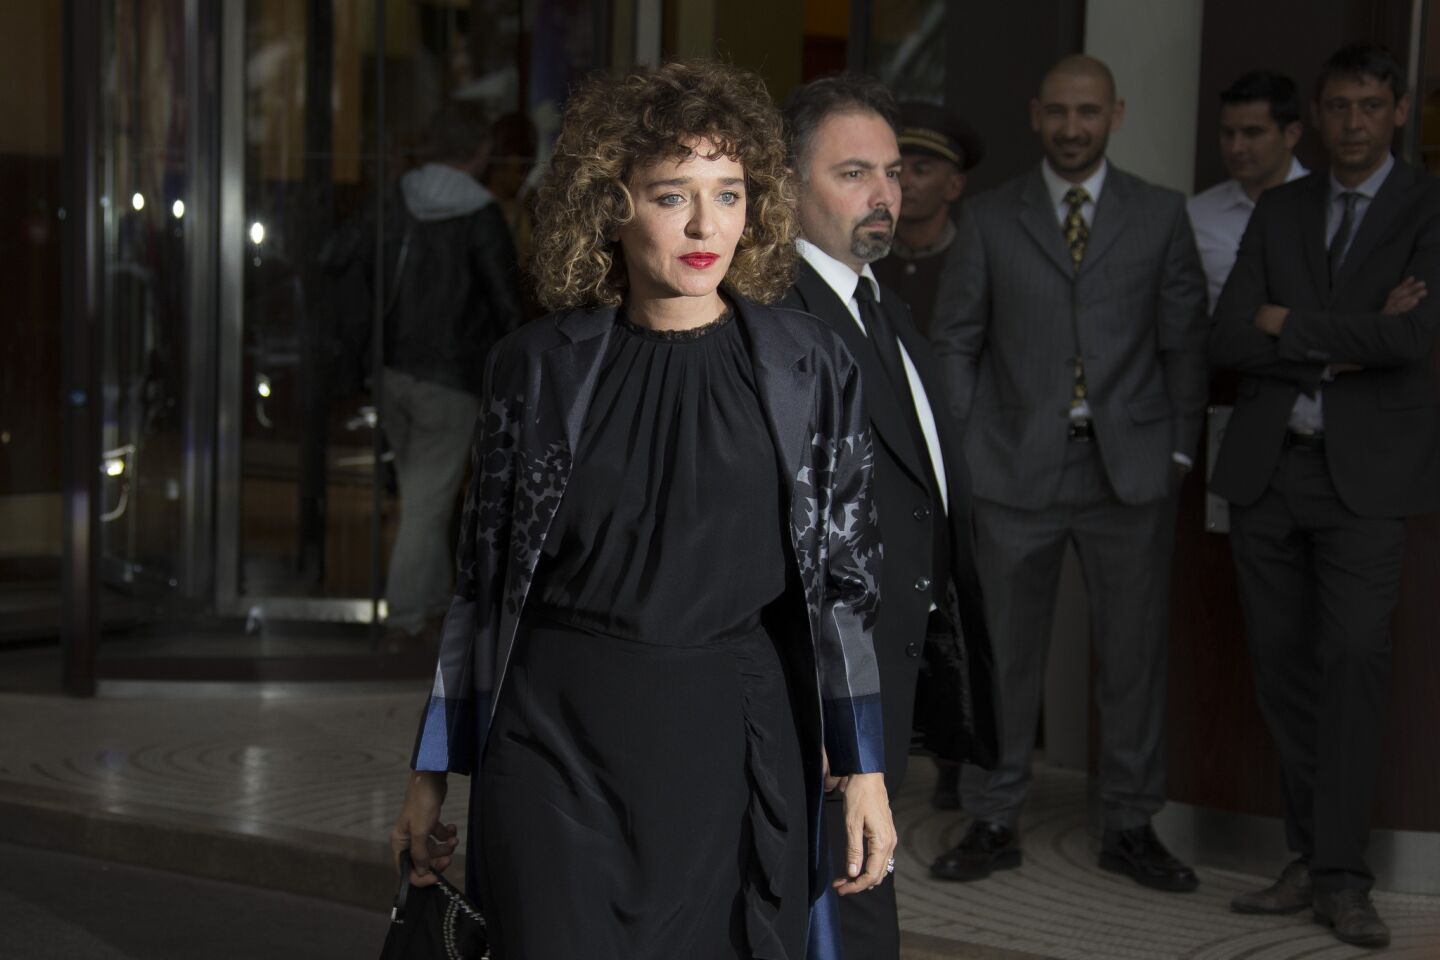 Cannes Film Festival jury member Valeria Golino arrives in southern France for the festival.